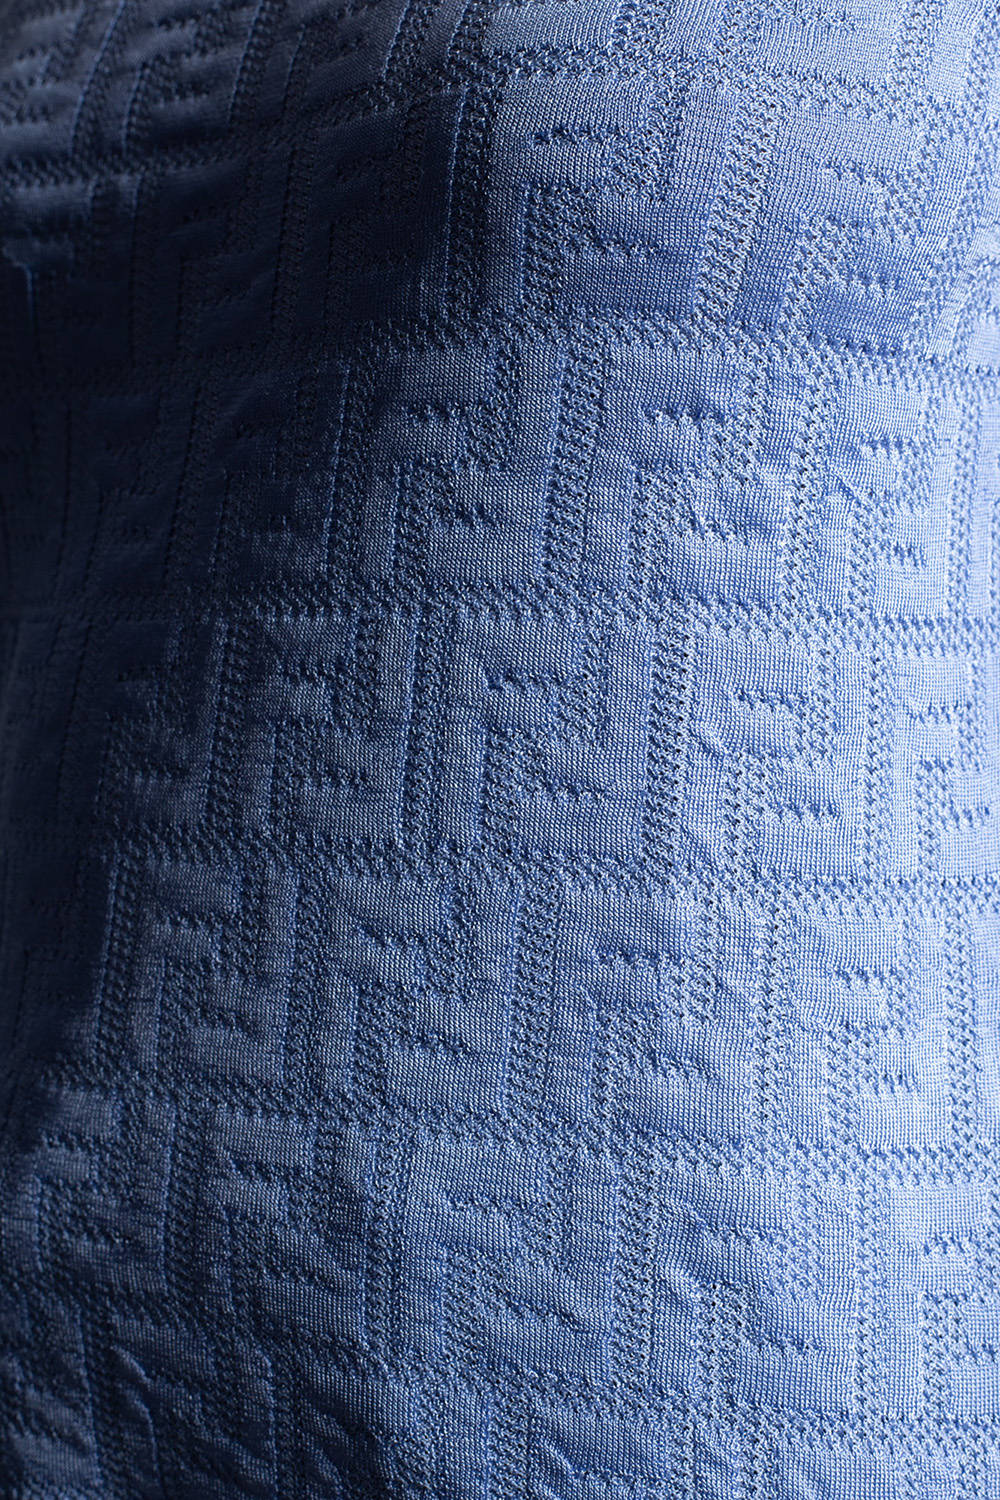 Fendi Designer Logo On Blue Fabric Wallpaper